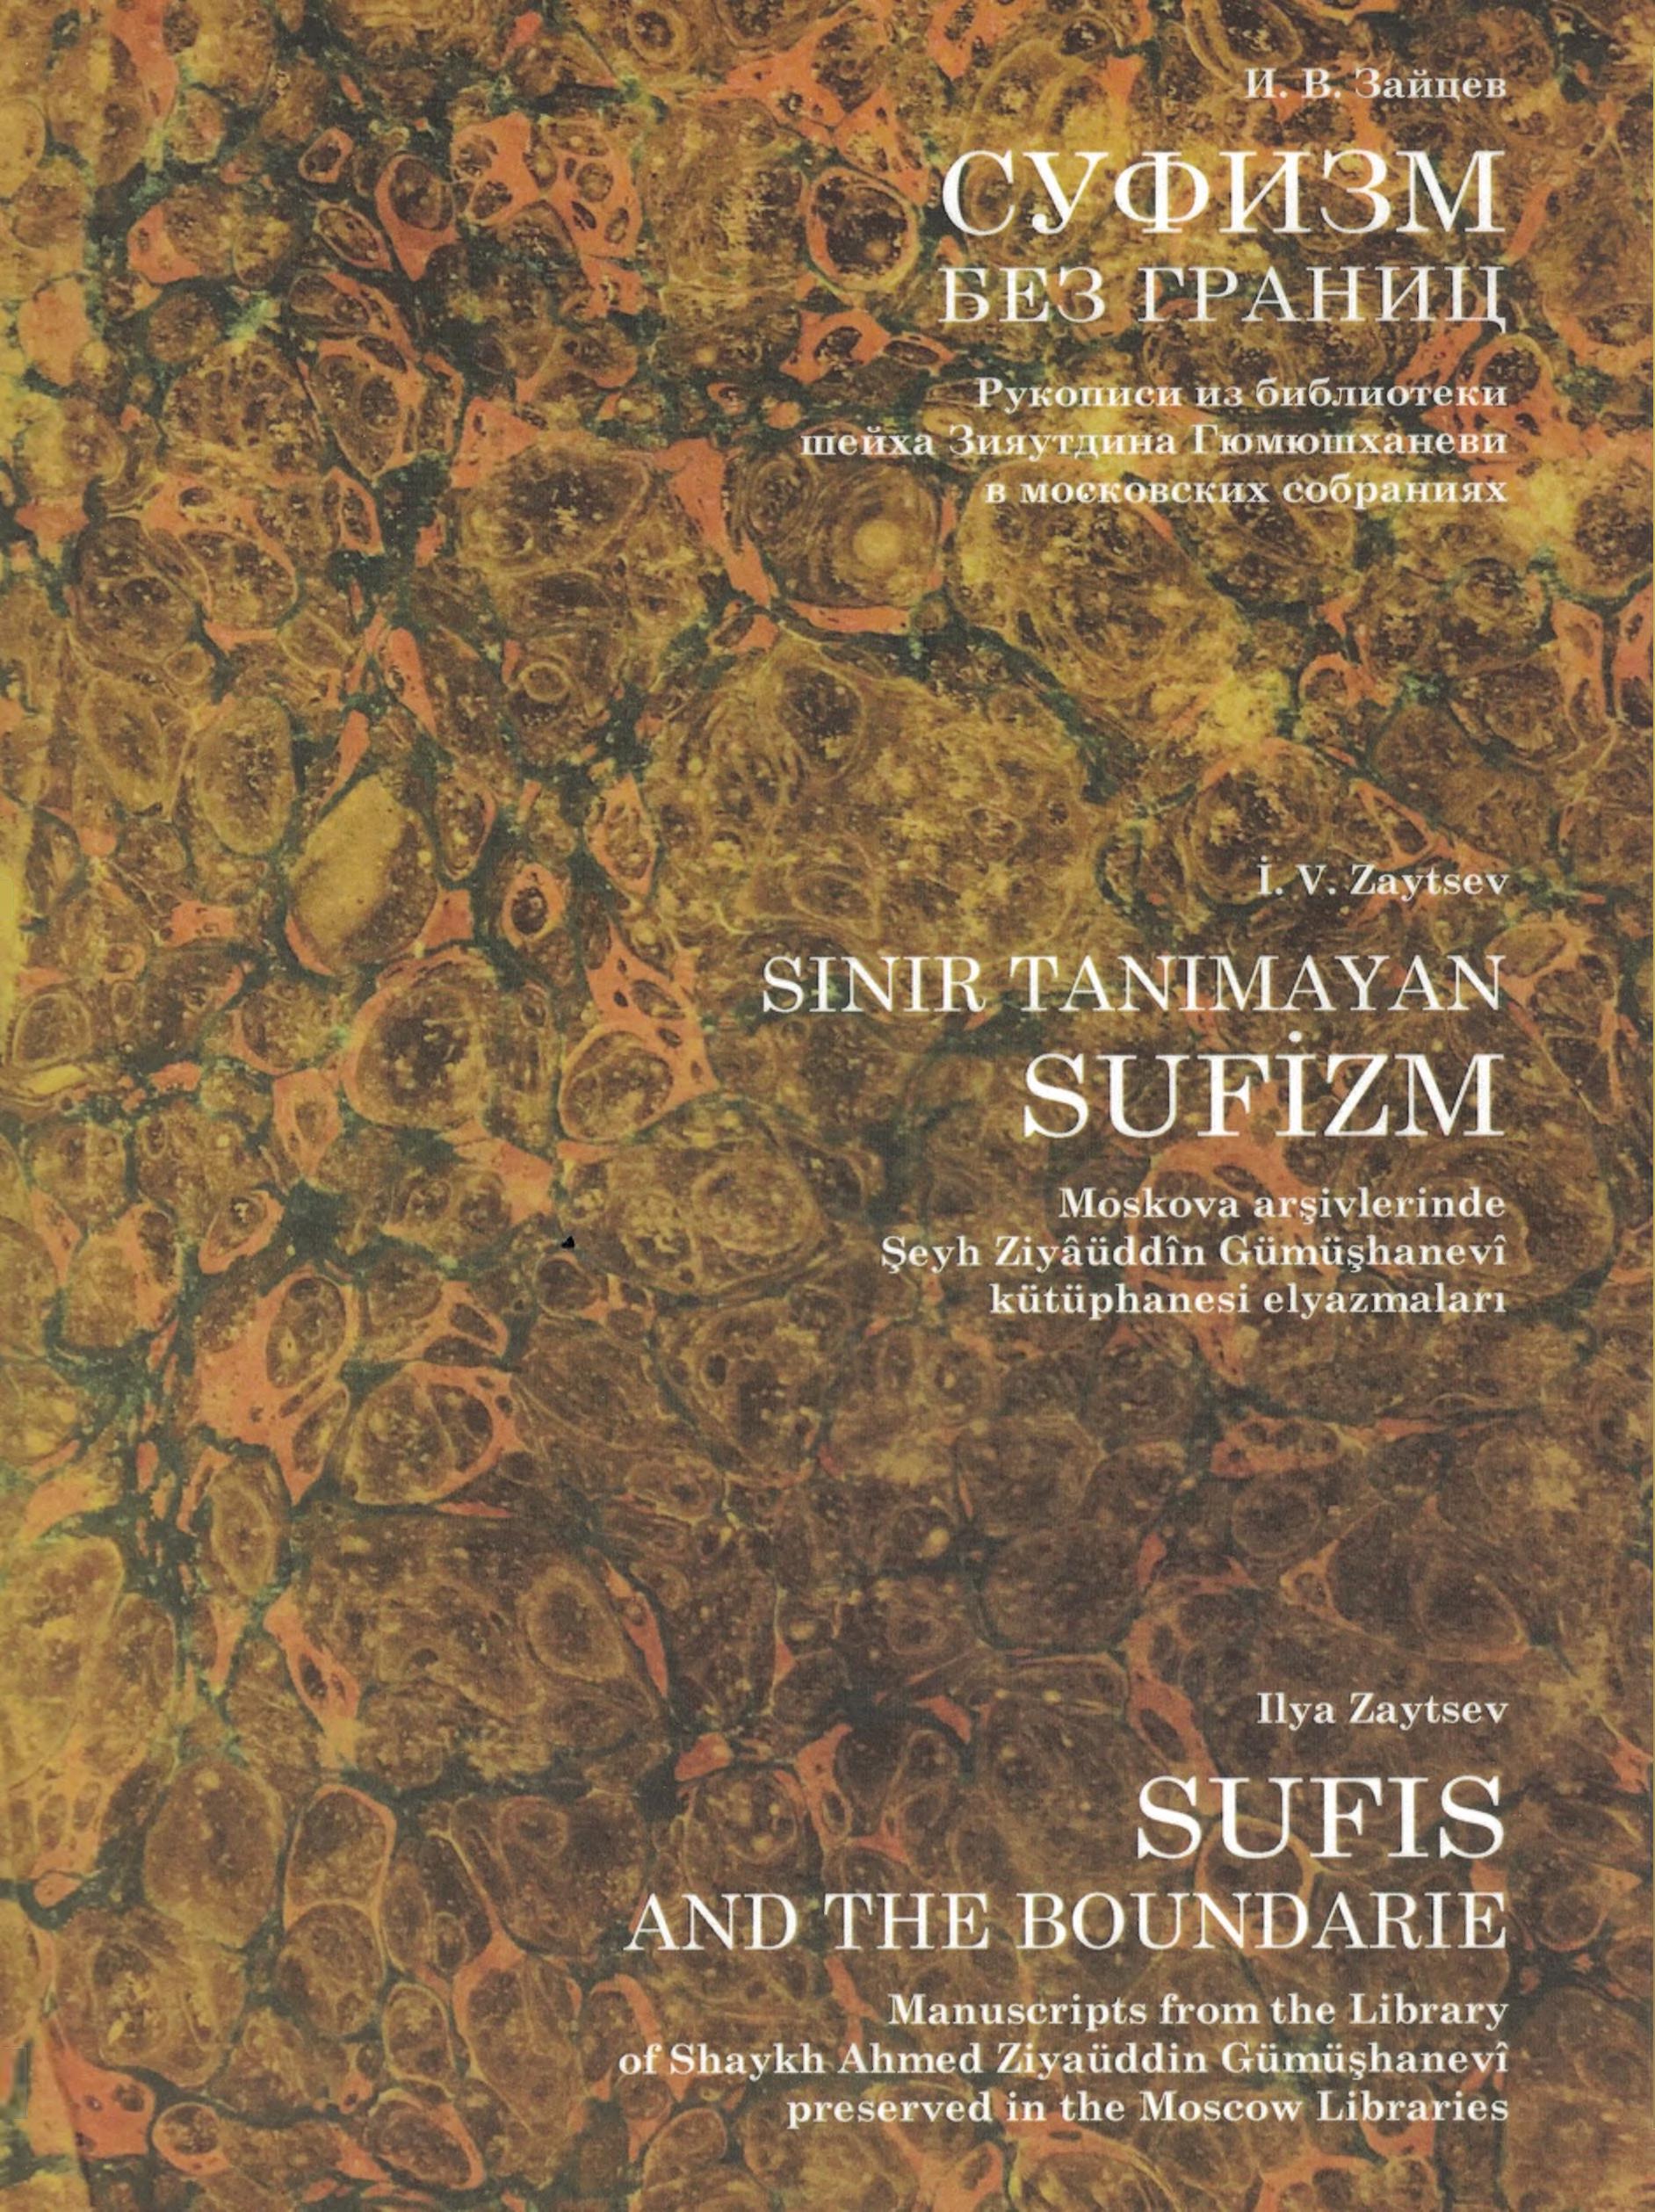 Суфизм без границ: рукописи из библиотеки шейха Зияутдина Гюмюшханеви в московских собраниях